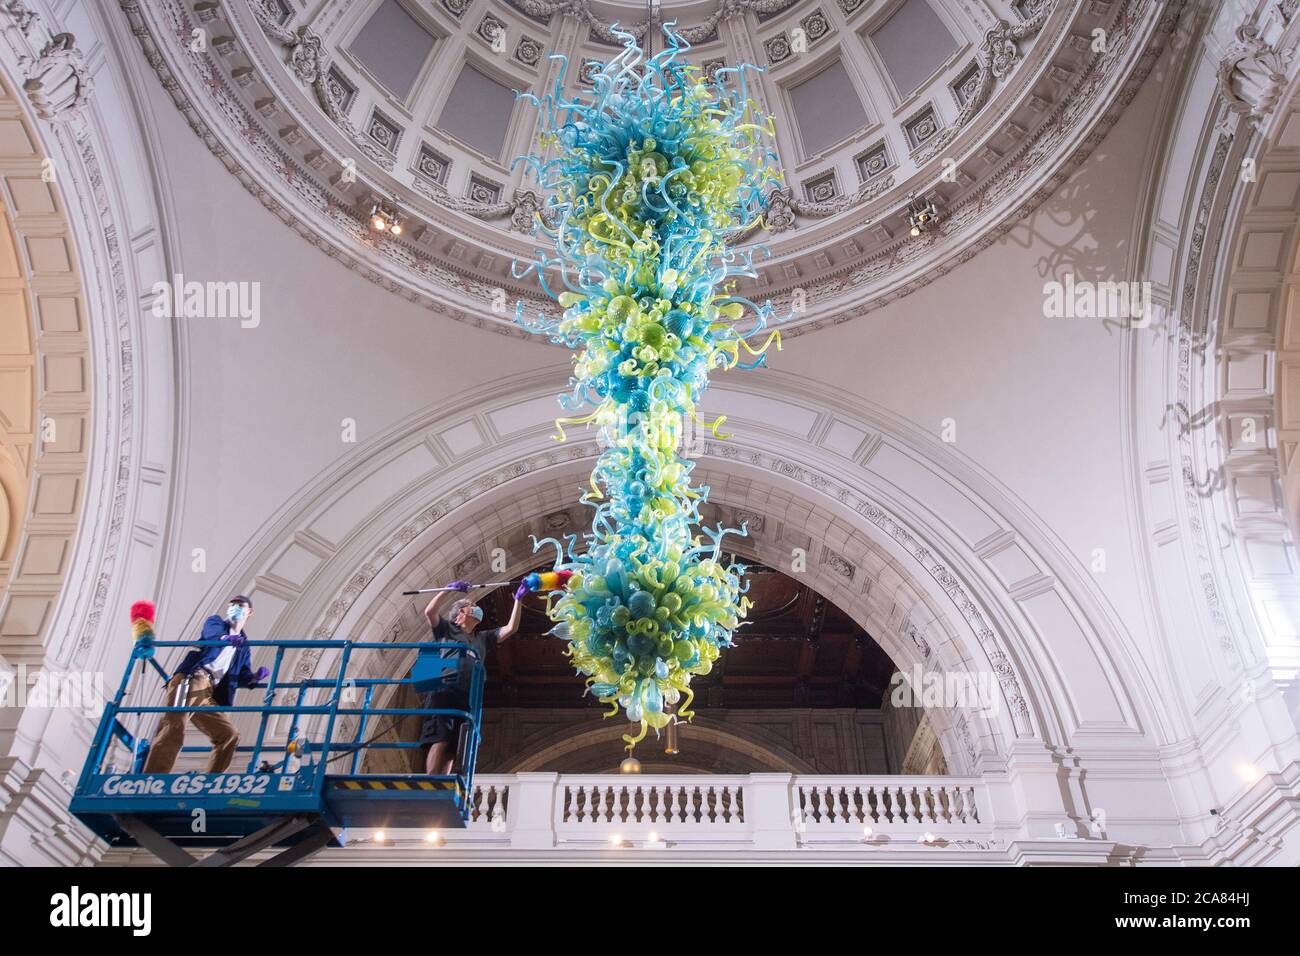 El técnico del museo Andy Monk limpia el vidrio de 27 pies Rotunda Chandelier de Dale Chihuly, que está compuesto por 1,300 elementos de vidrio azul y verde, en el Victoria and Albert Museum en Londres, mientras se prepara para reabrir al público el 6 de agosto. Foto de stock